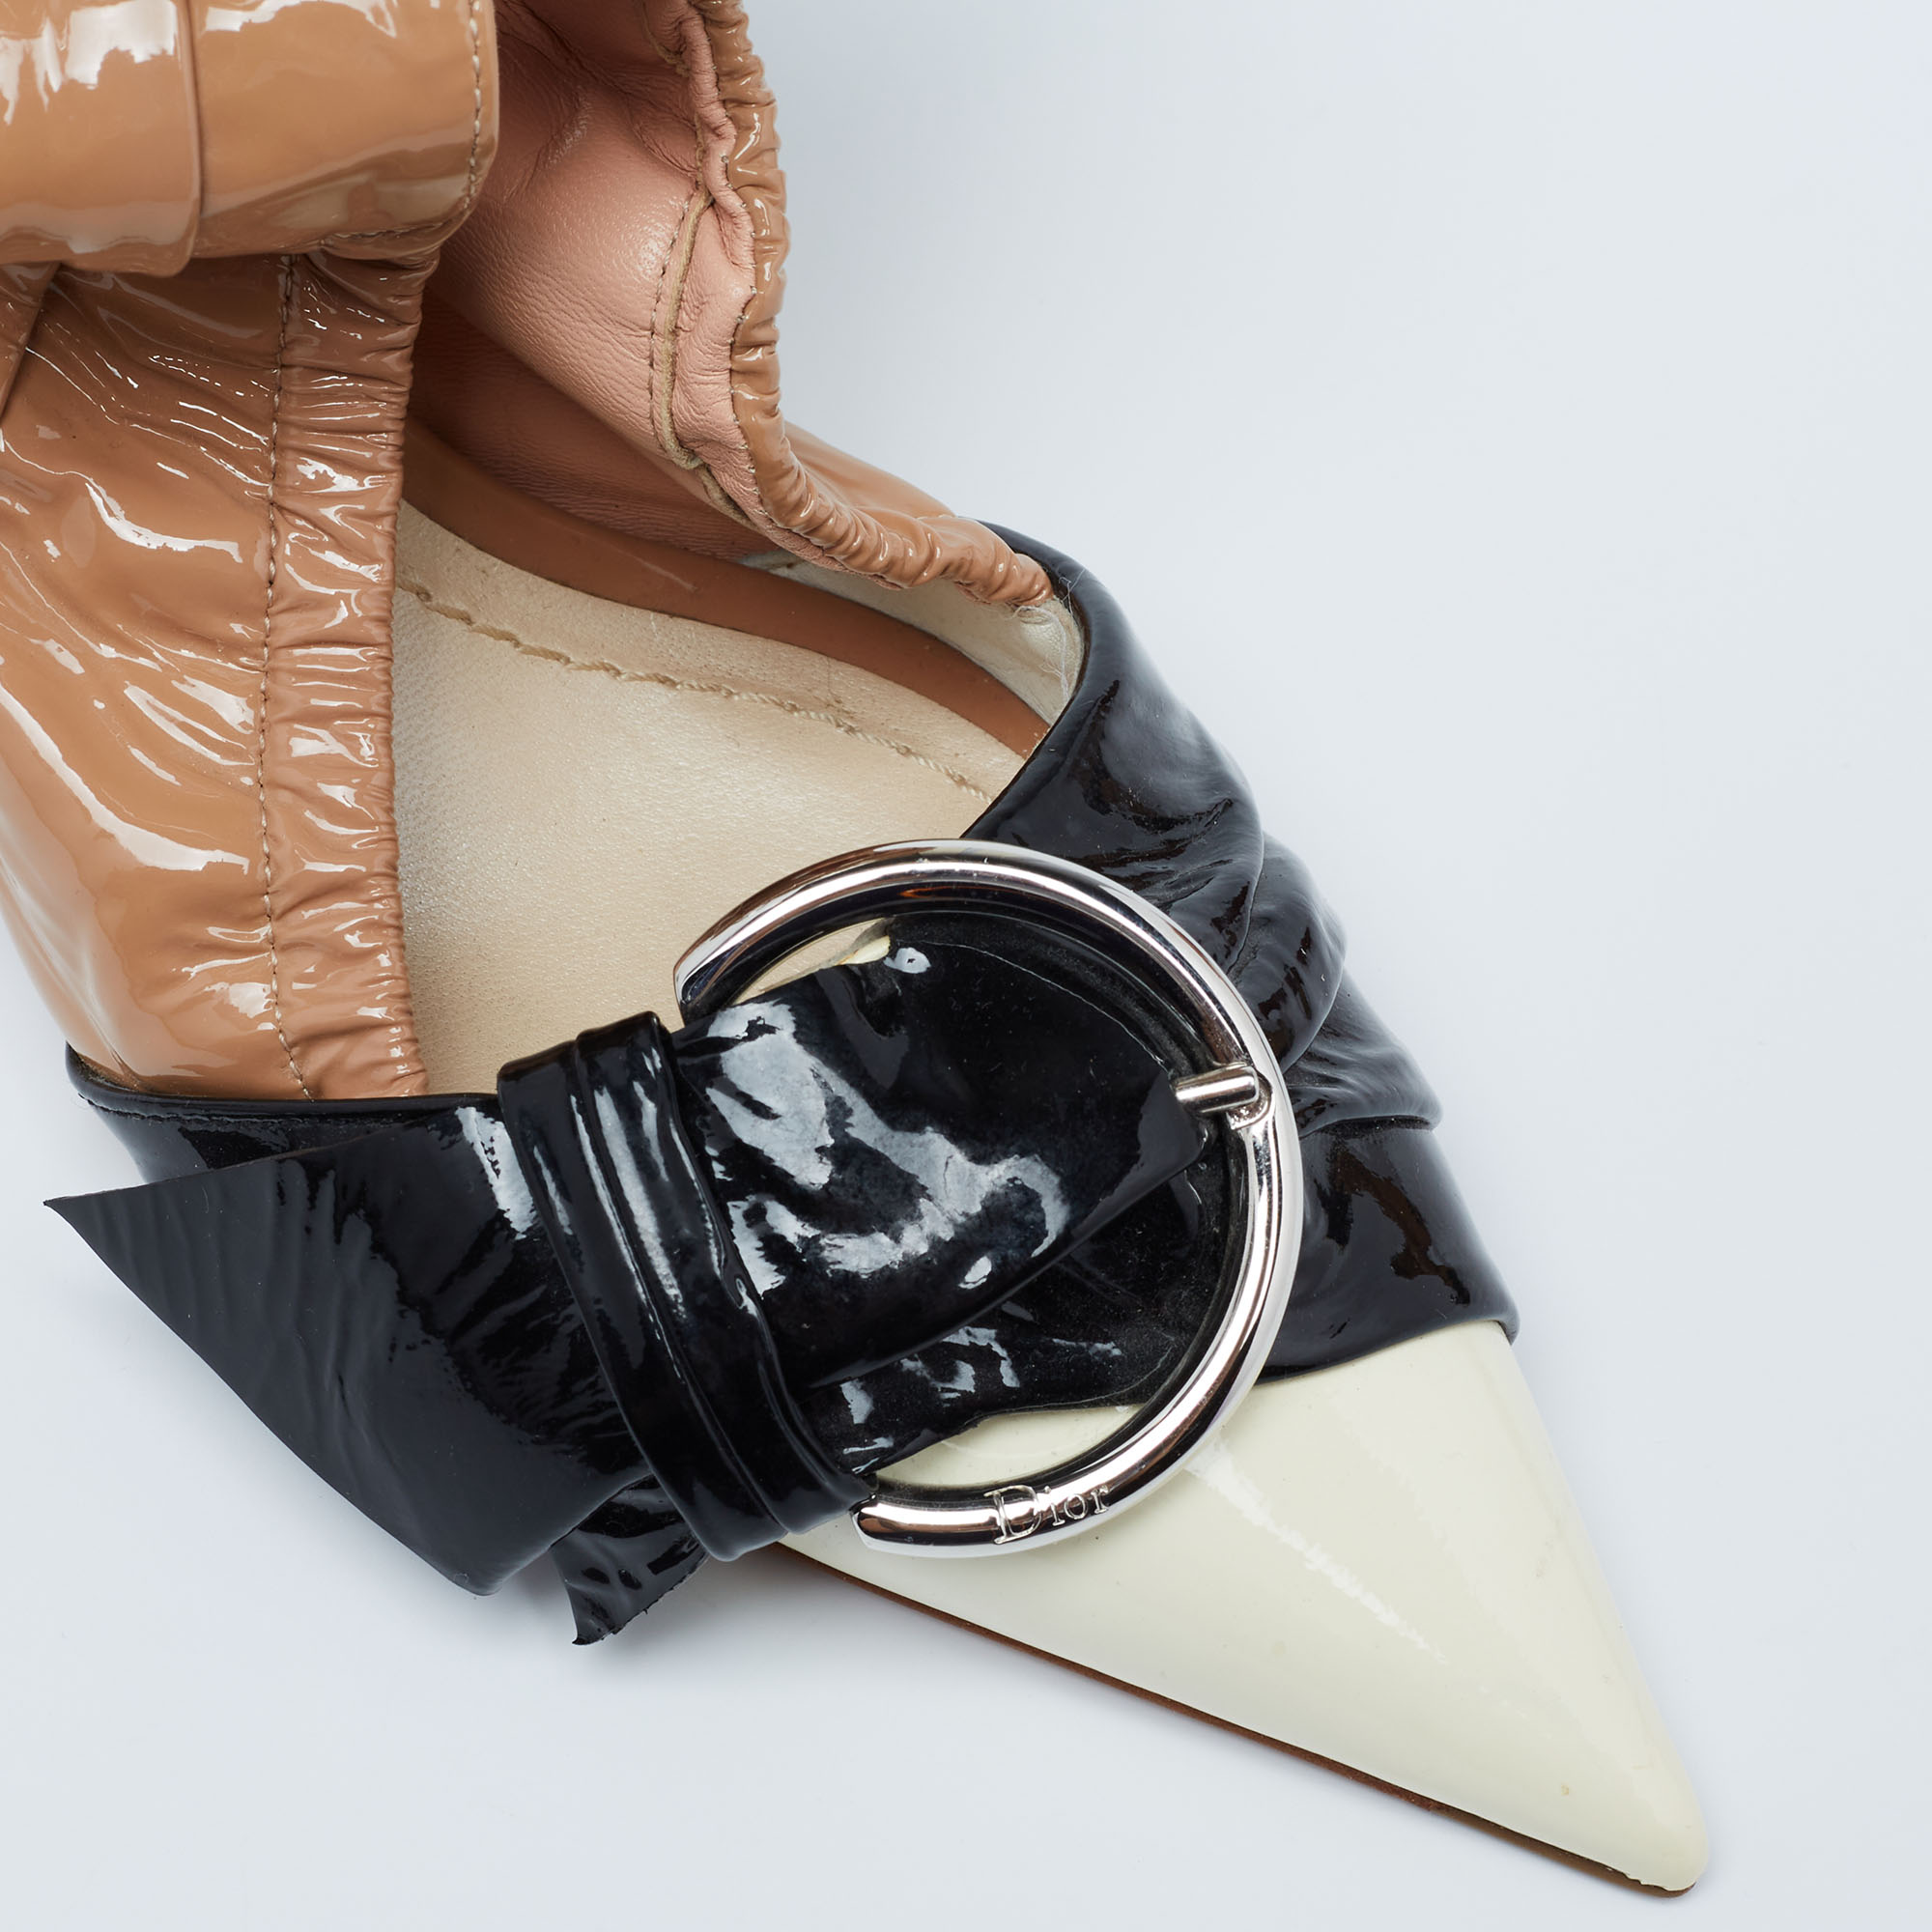 Dior Tri-Color Patent Leather Conquest Buckle Ankle Wrap Pumps Size 36.5